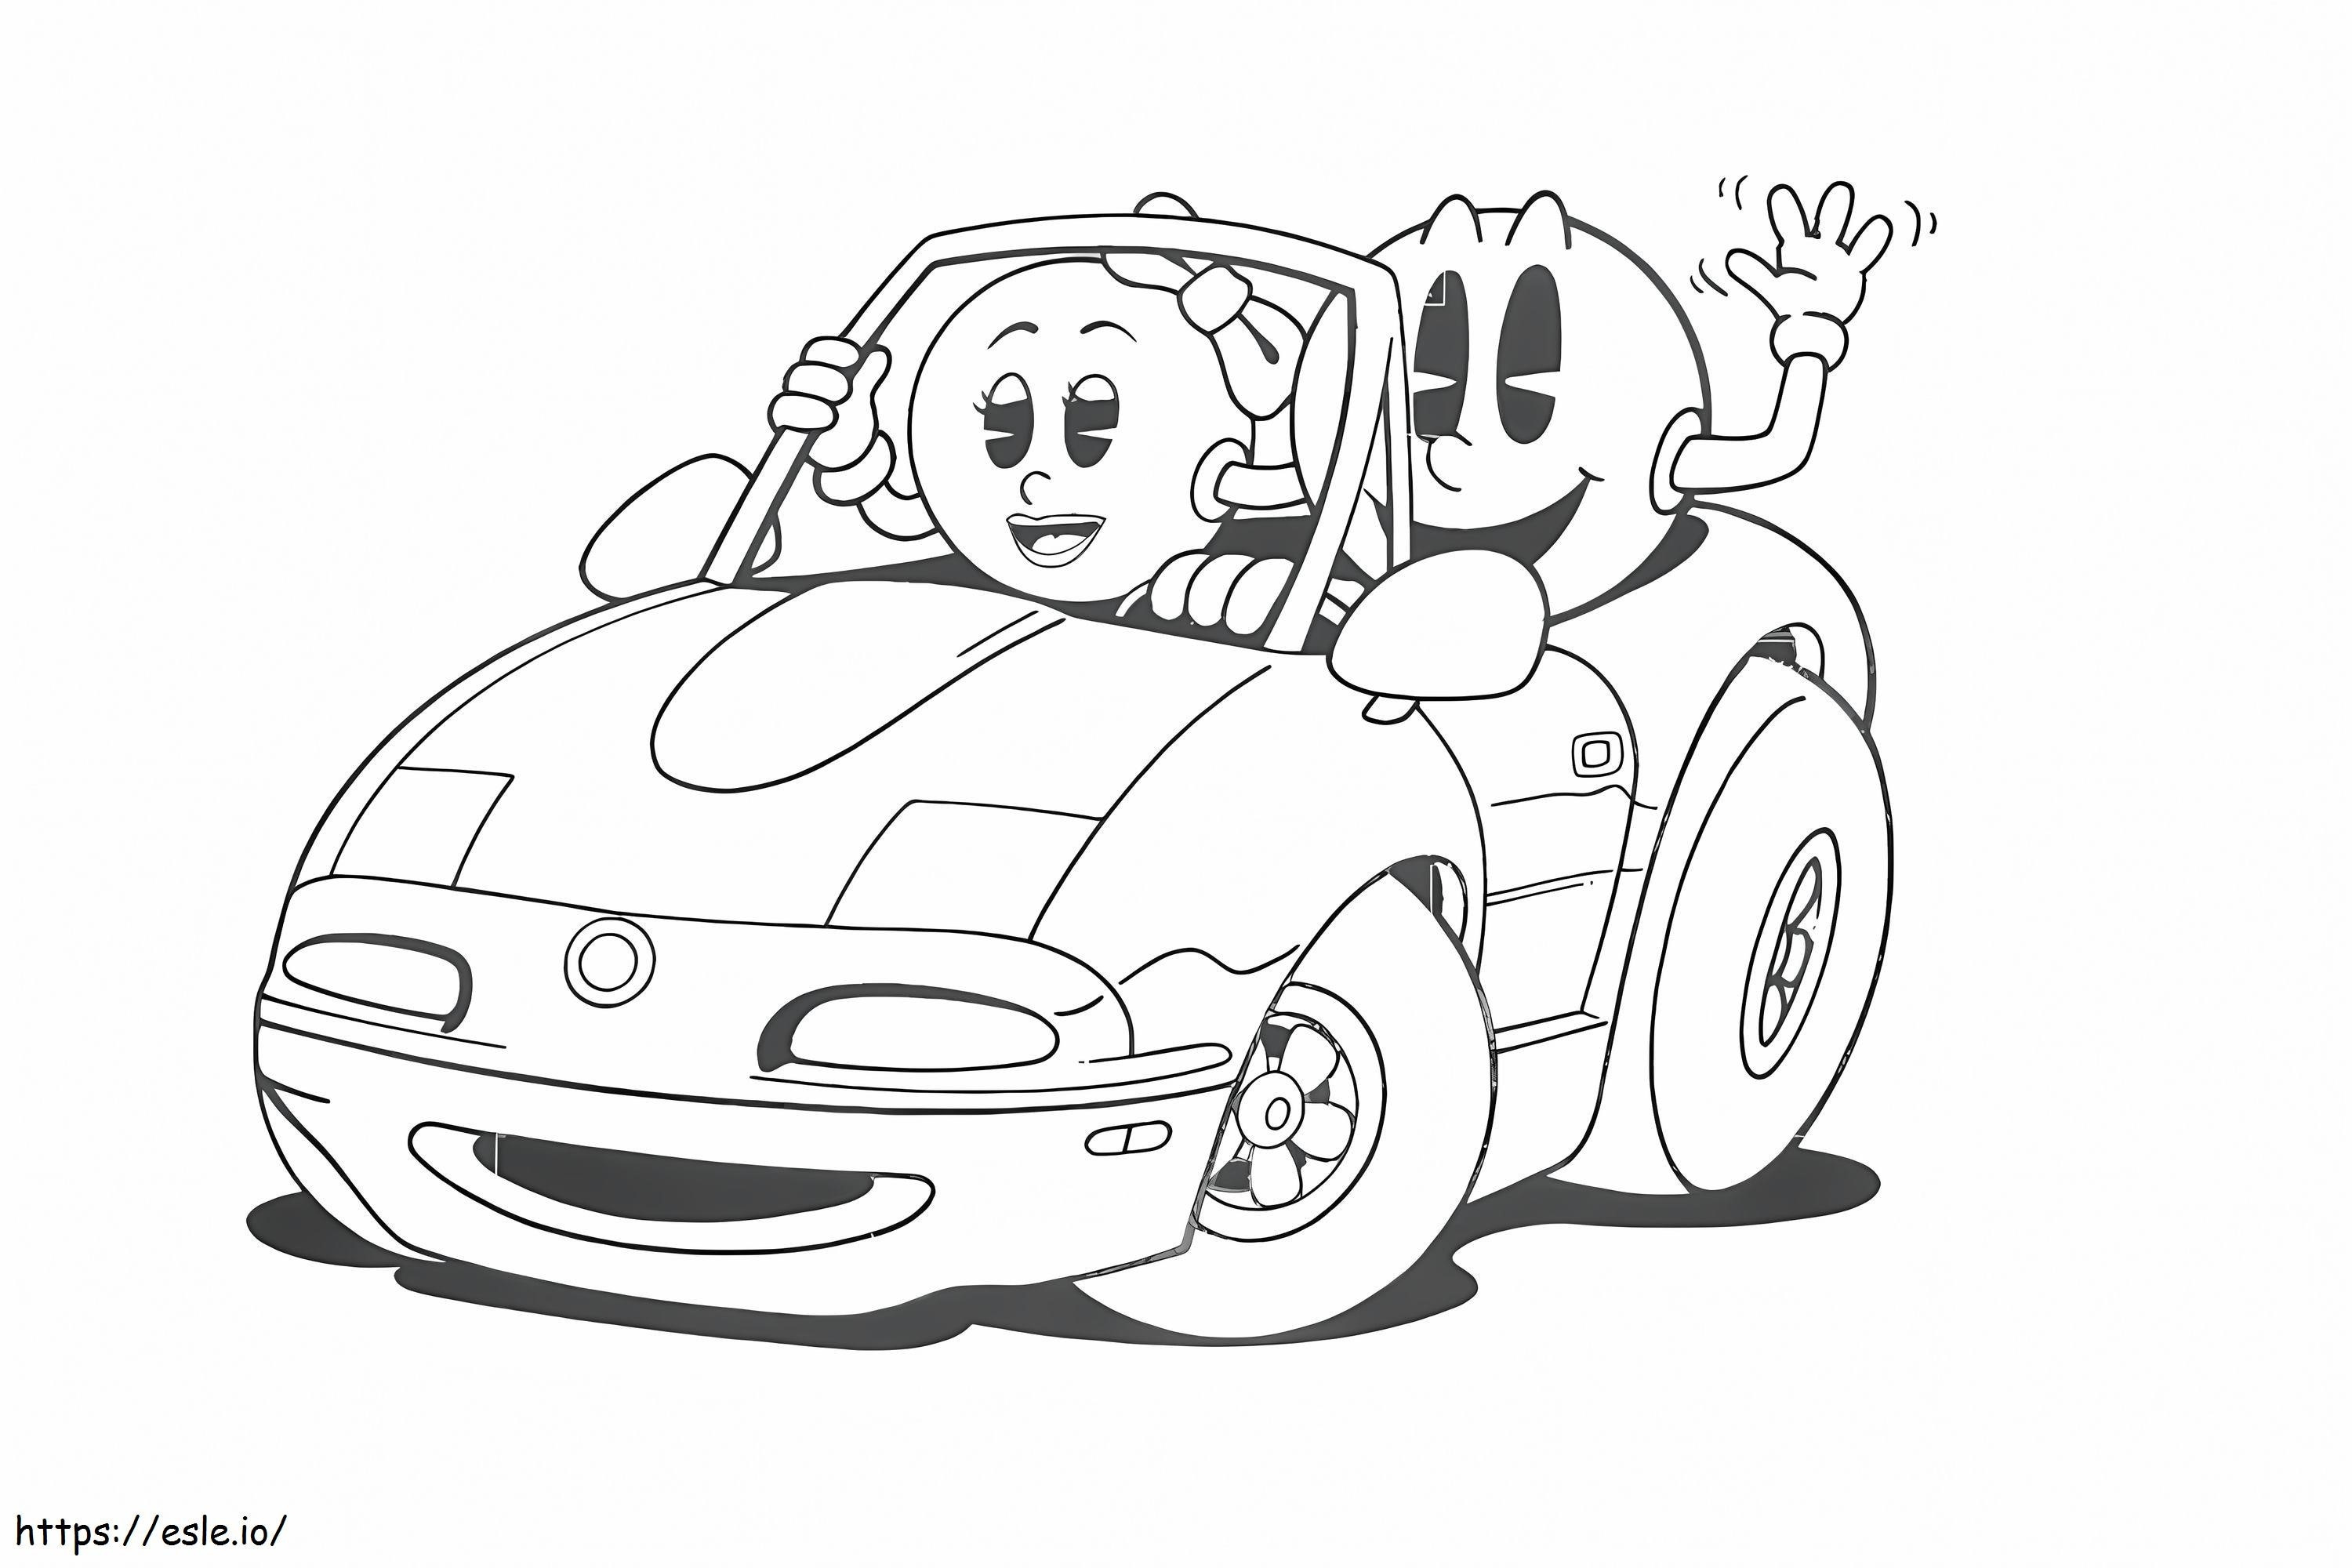 Pacman care conduce o mașină cu MS Pacman de colorat